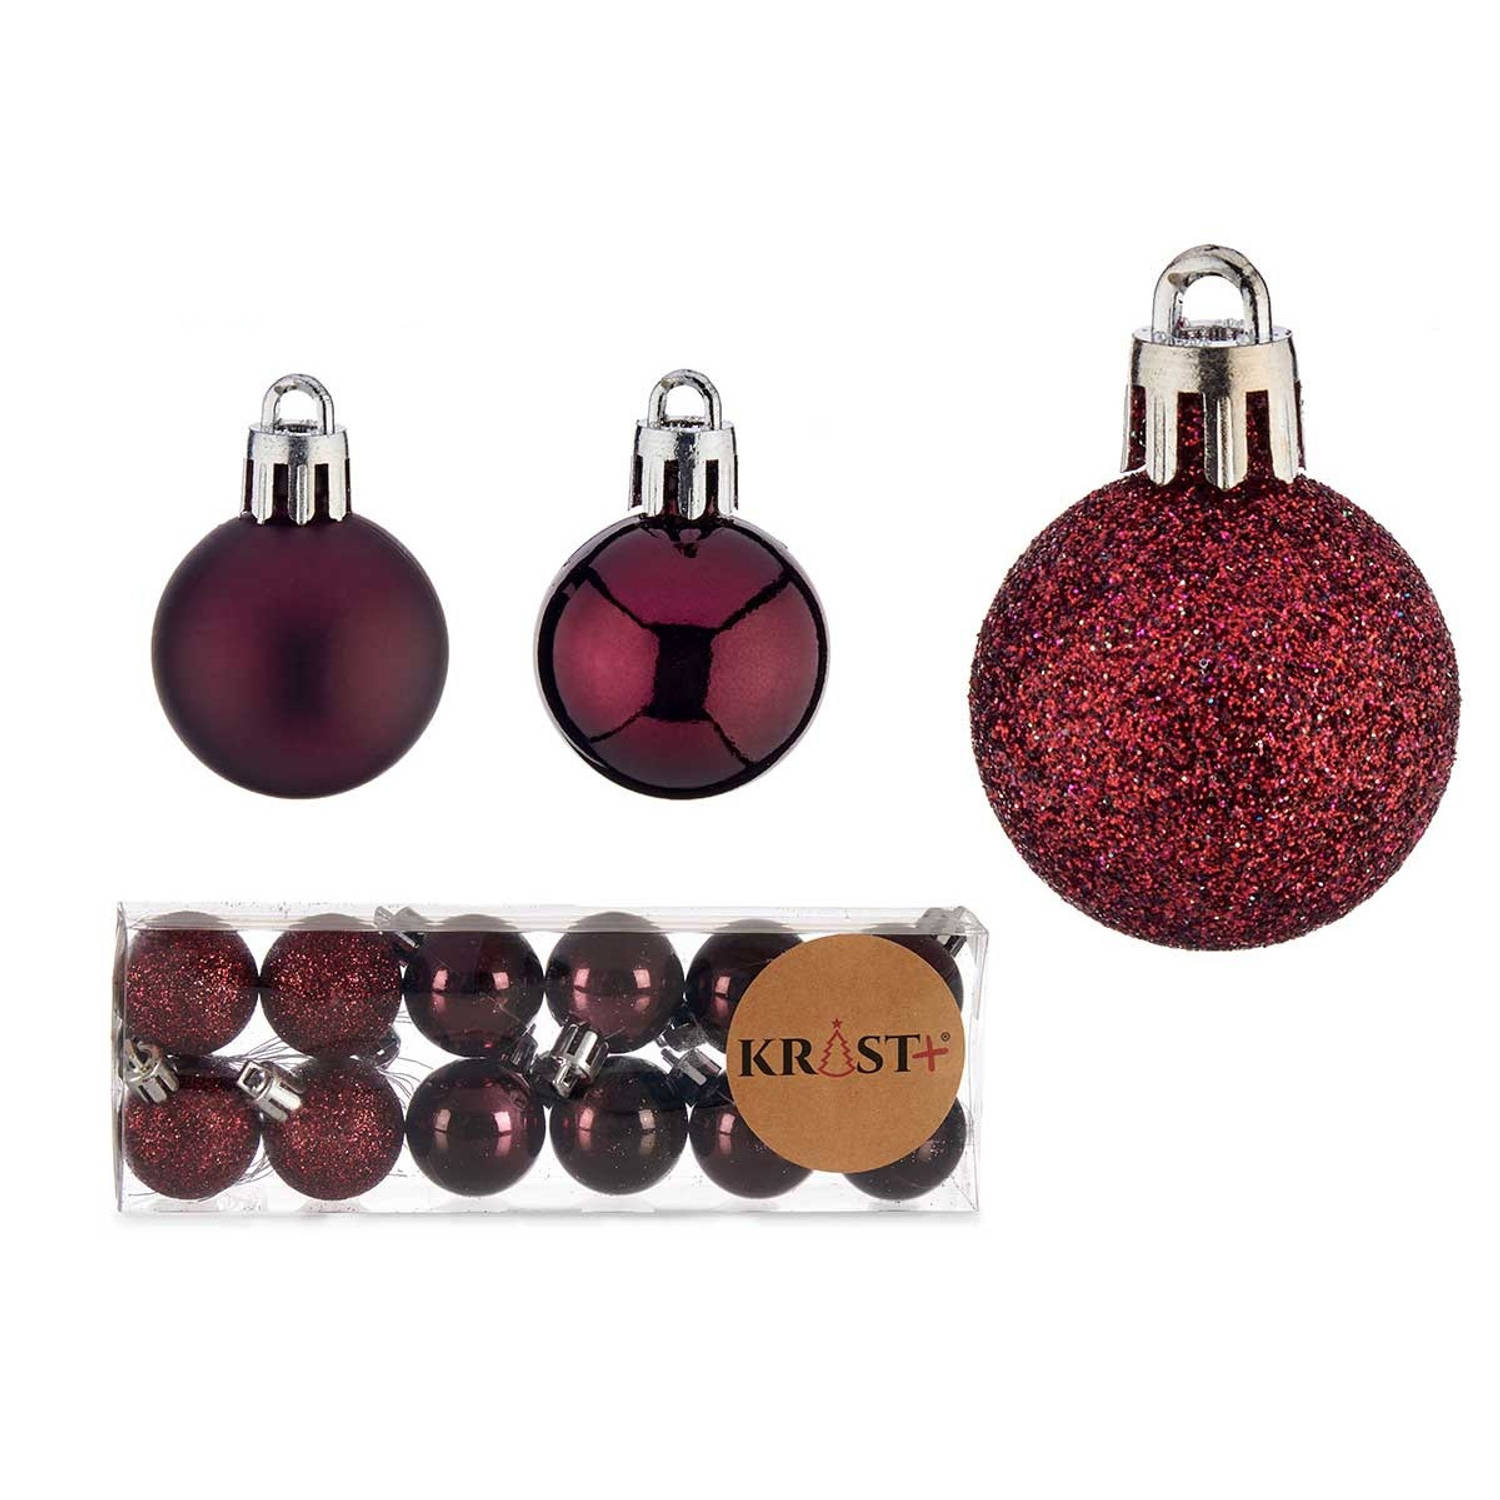 Arte R kleine kerstballen - 12x stuks - wijn/bordeaux rood - kunststof - 3 cm